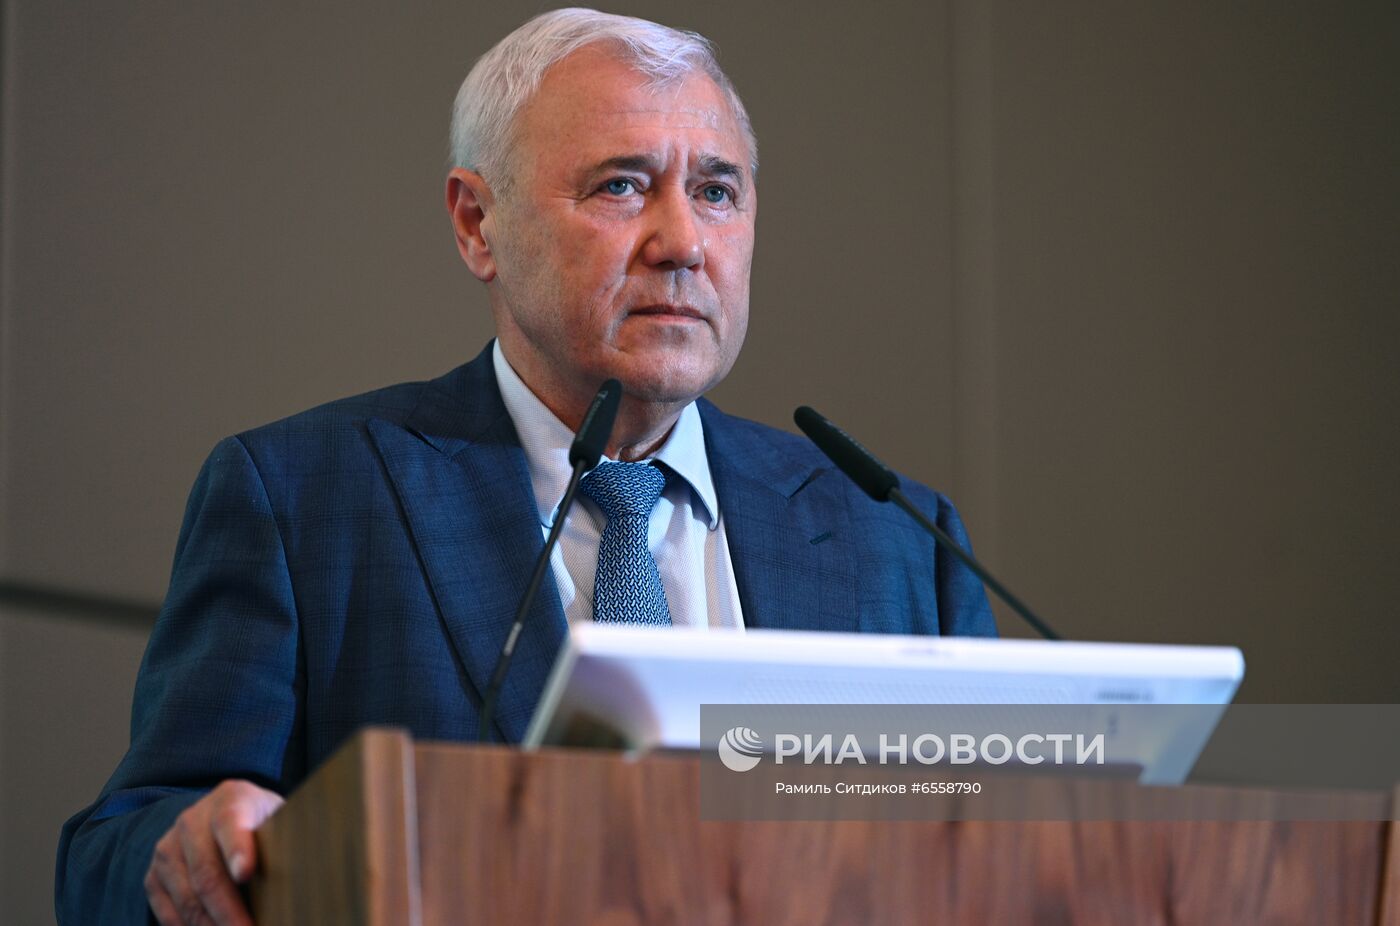 III Съезд Ассоциации банков России